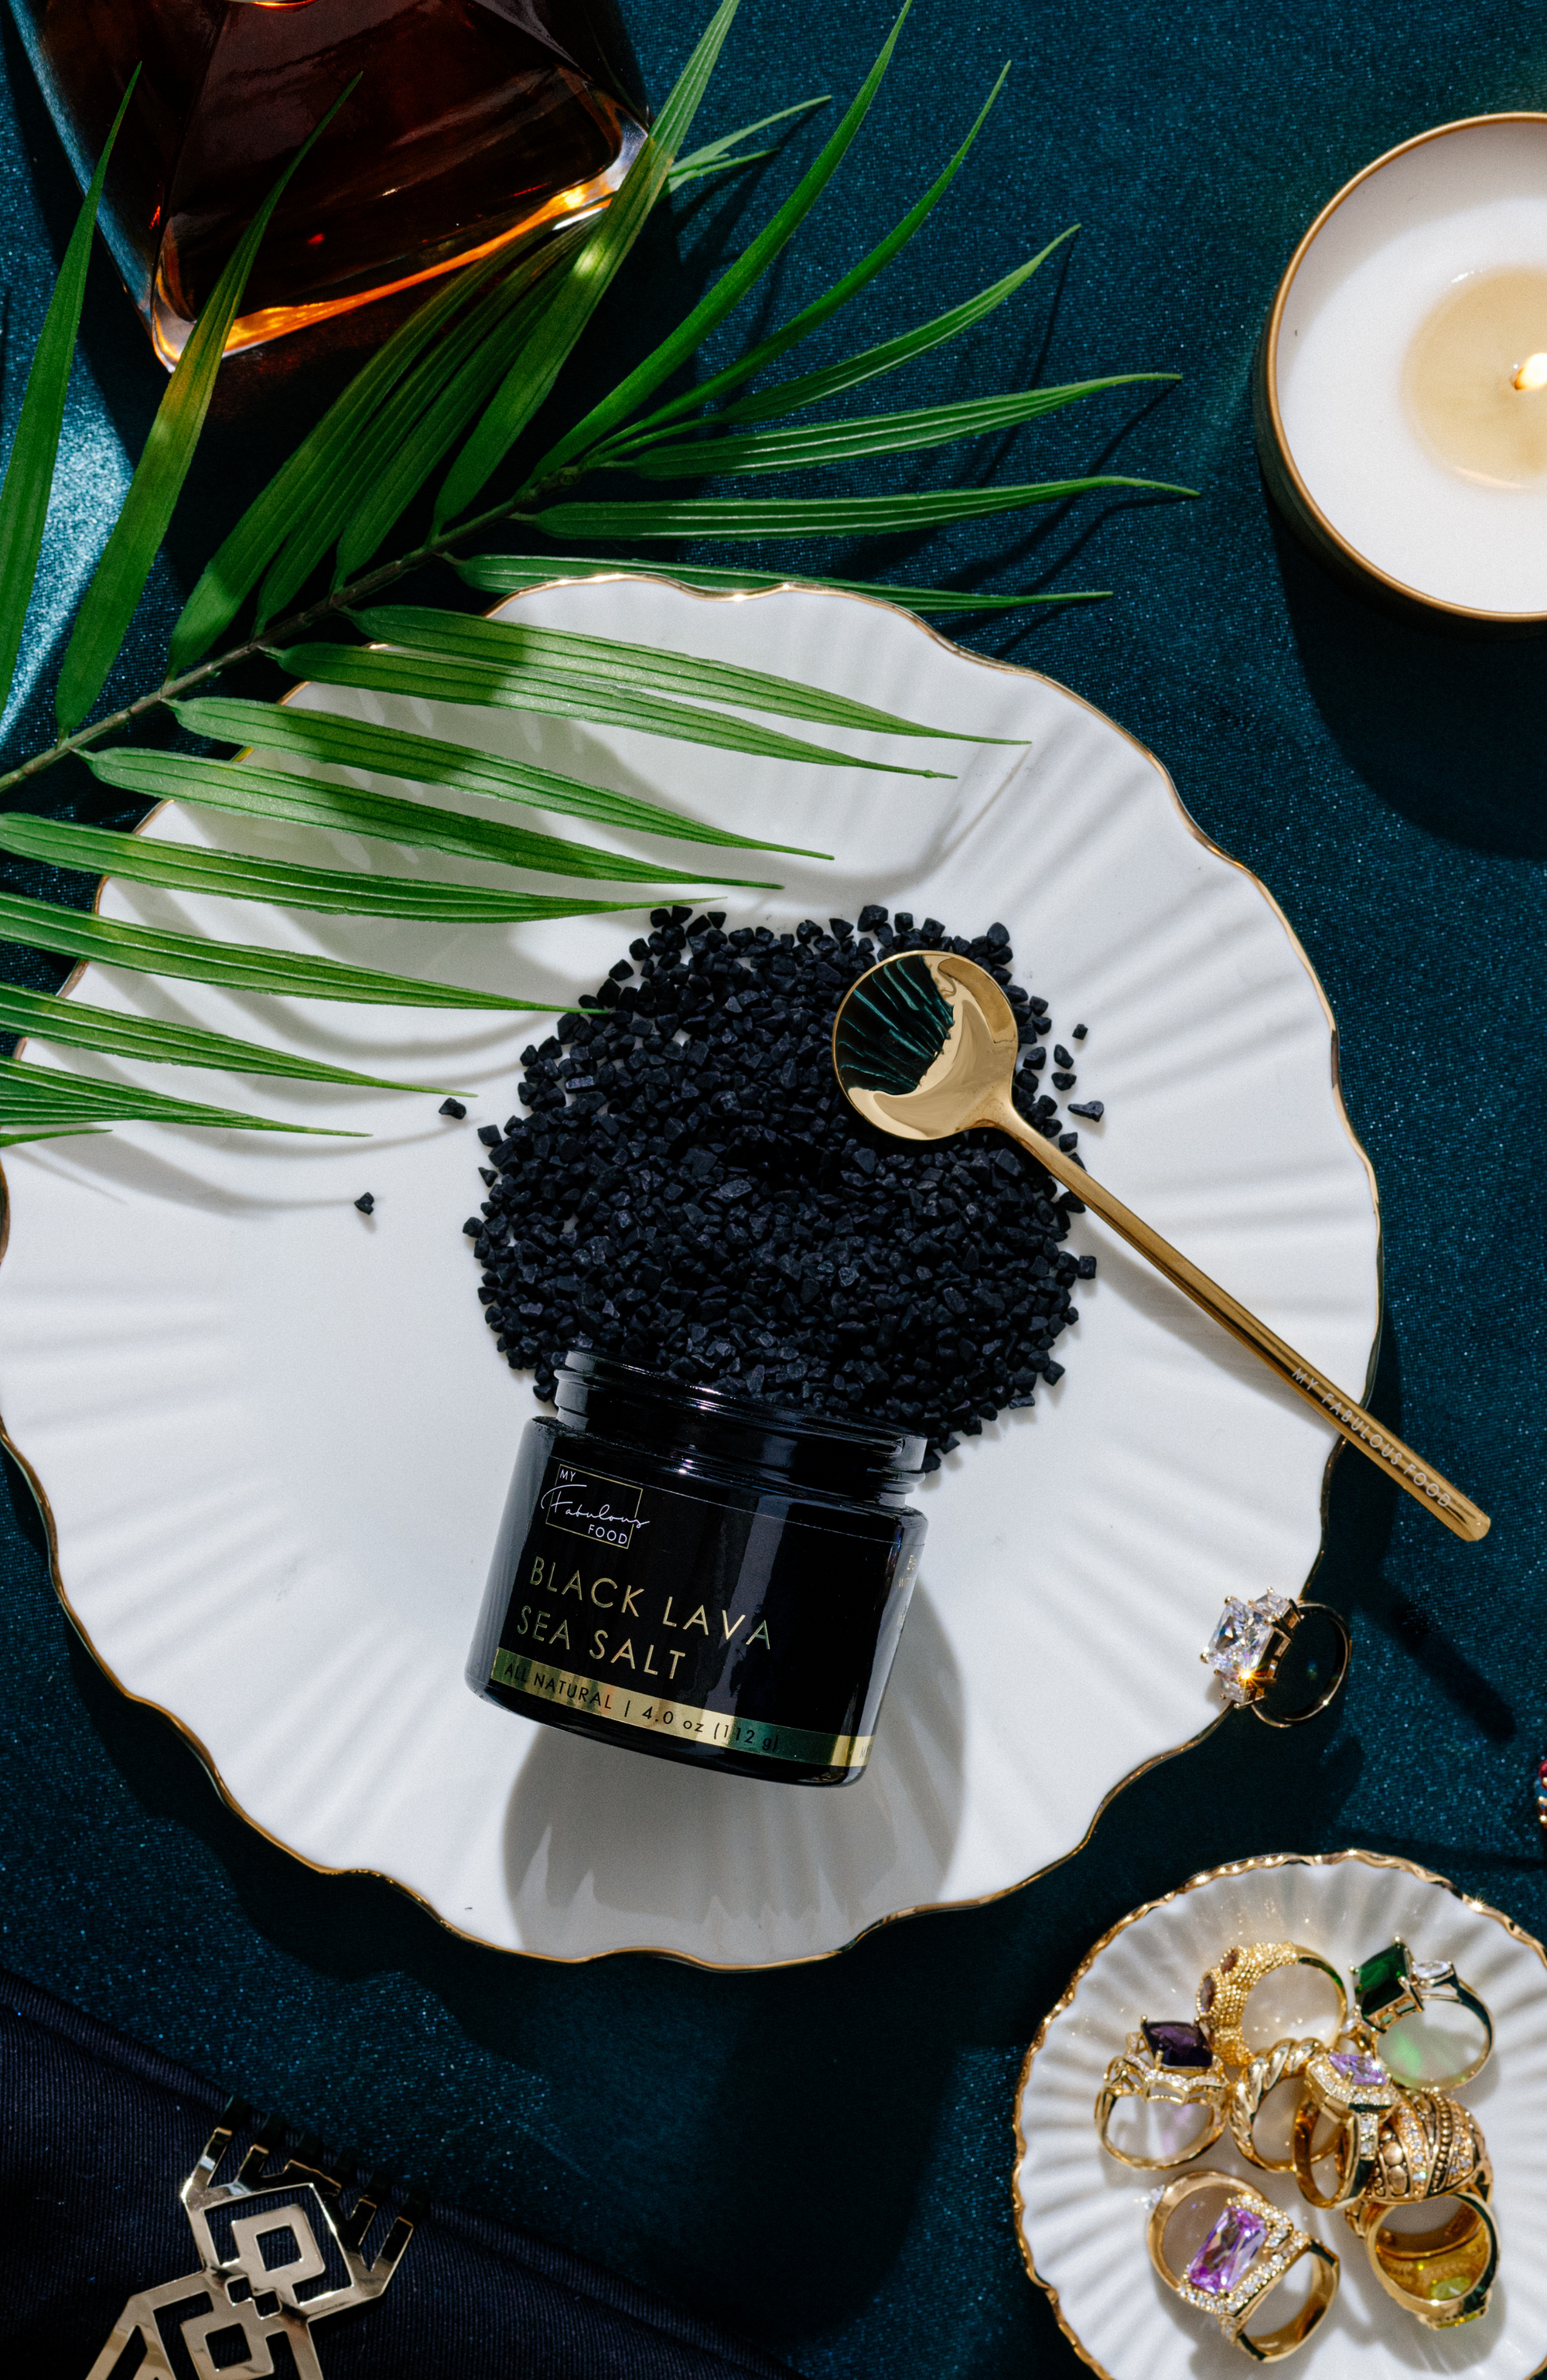 Luxury Black Lava and Alaea Sea Salt Gift Set